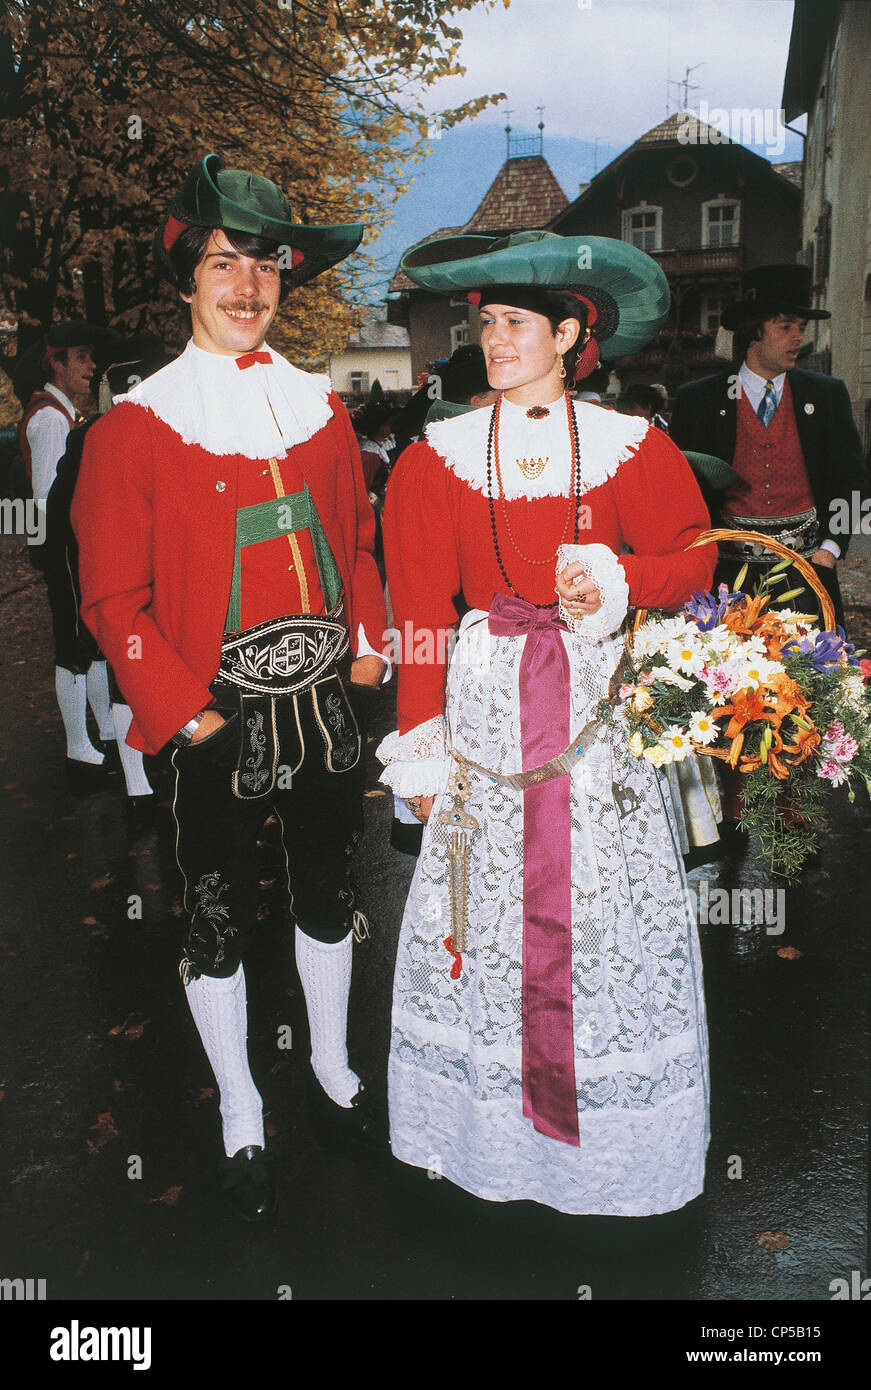 Trentino Alto Adige - Merano. The grape festival, typical costumes Stock  Photo - Alamy